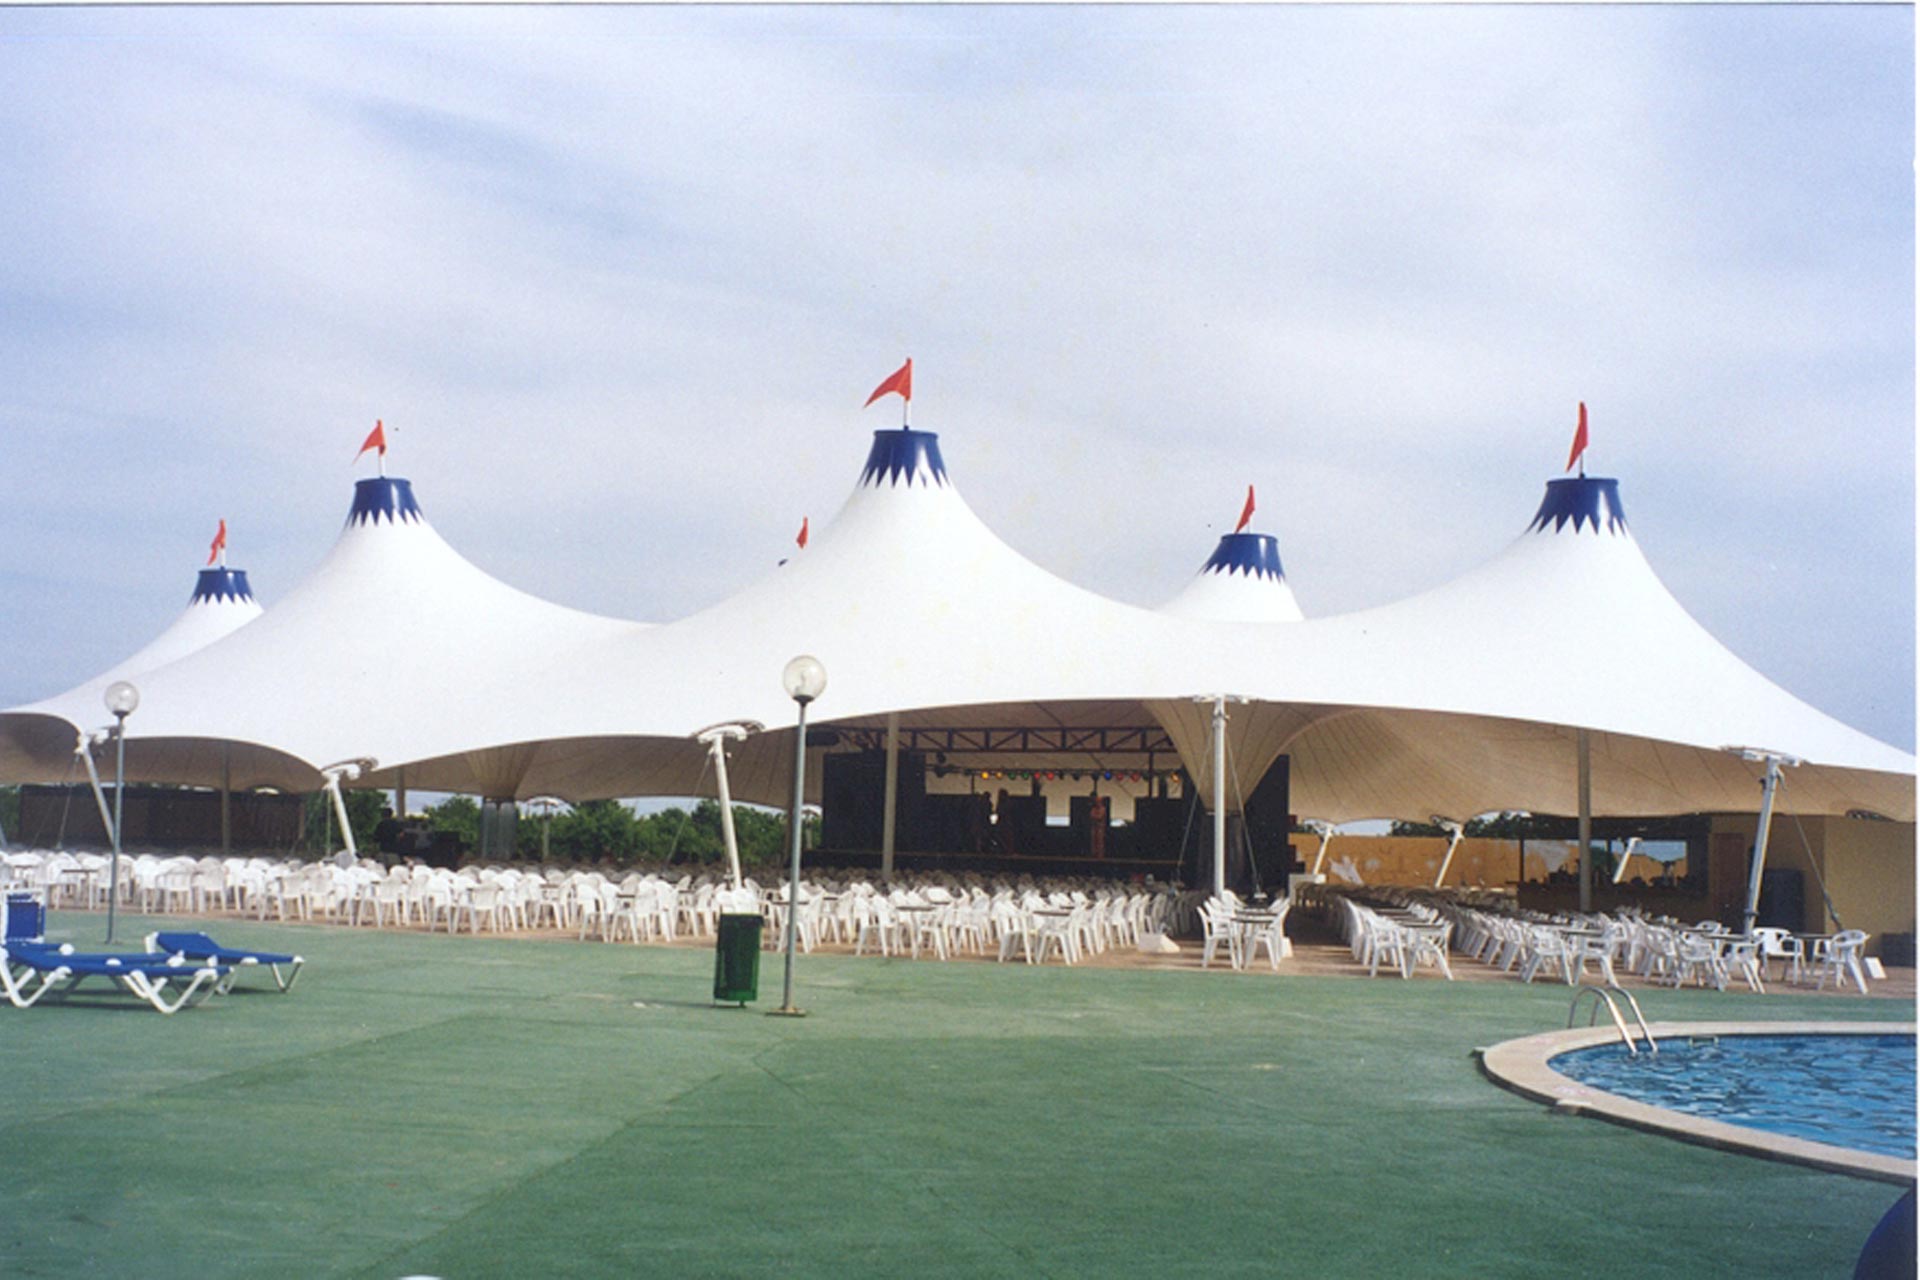 Estructura tensada en forma de carpa de circo para hostelería en Mallorca